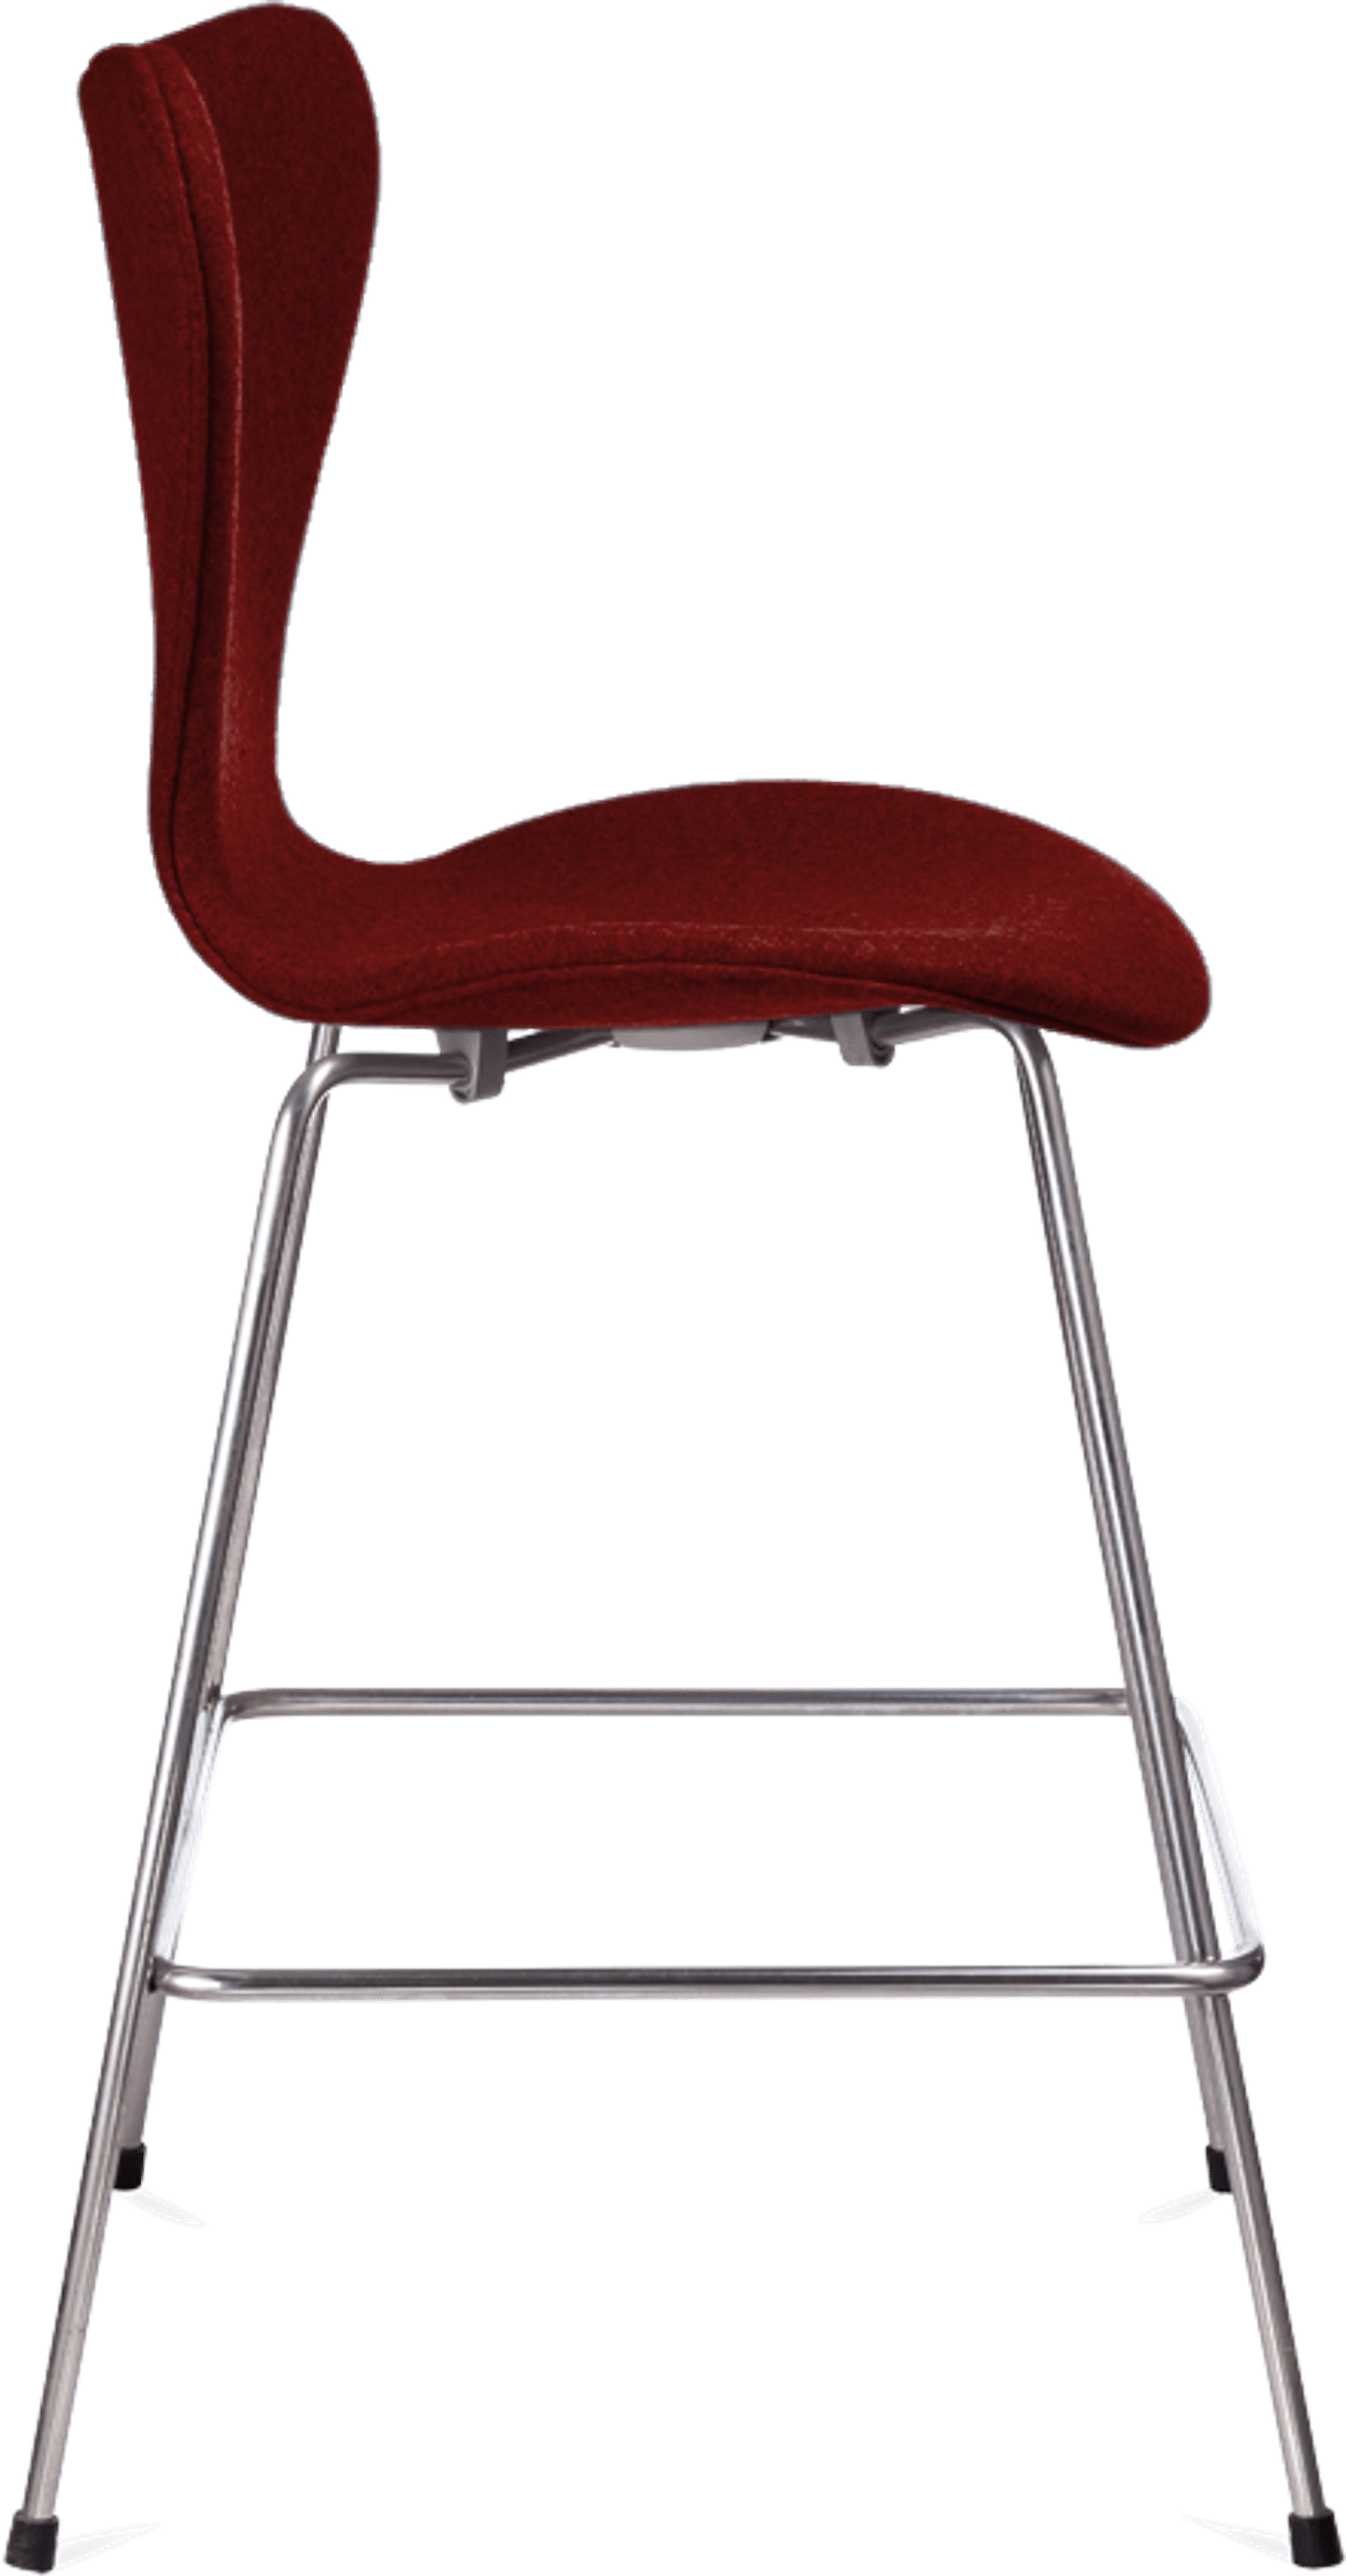 Serie 7 barstol stoppad med klädsel Red image.